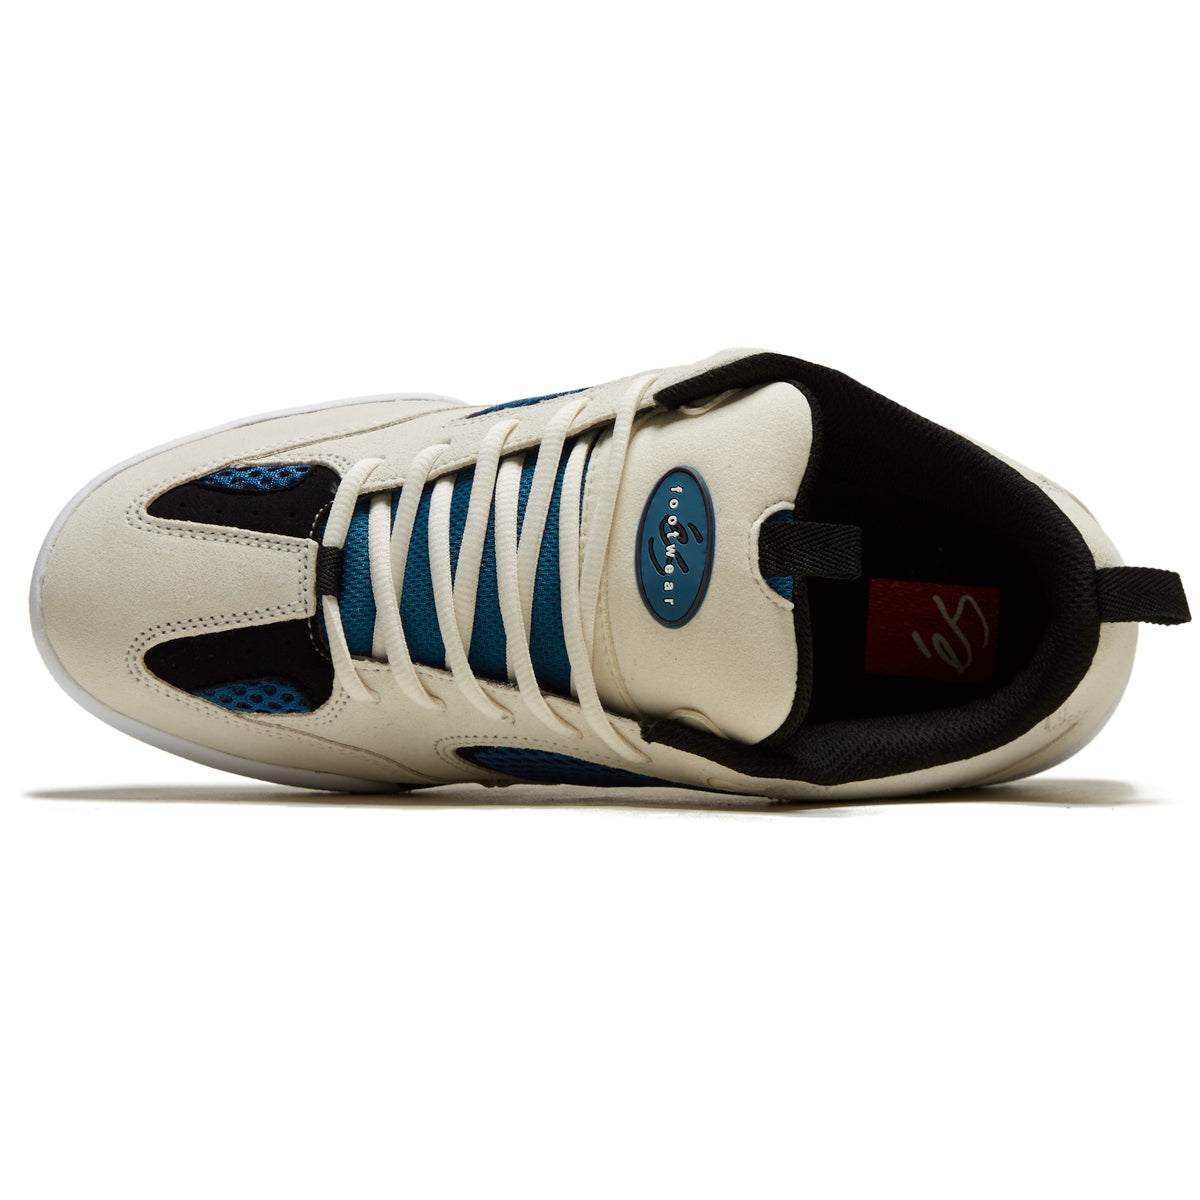 eS Quattro Shoes - White/Blue/Black image 3